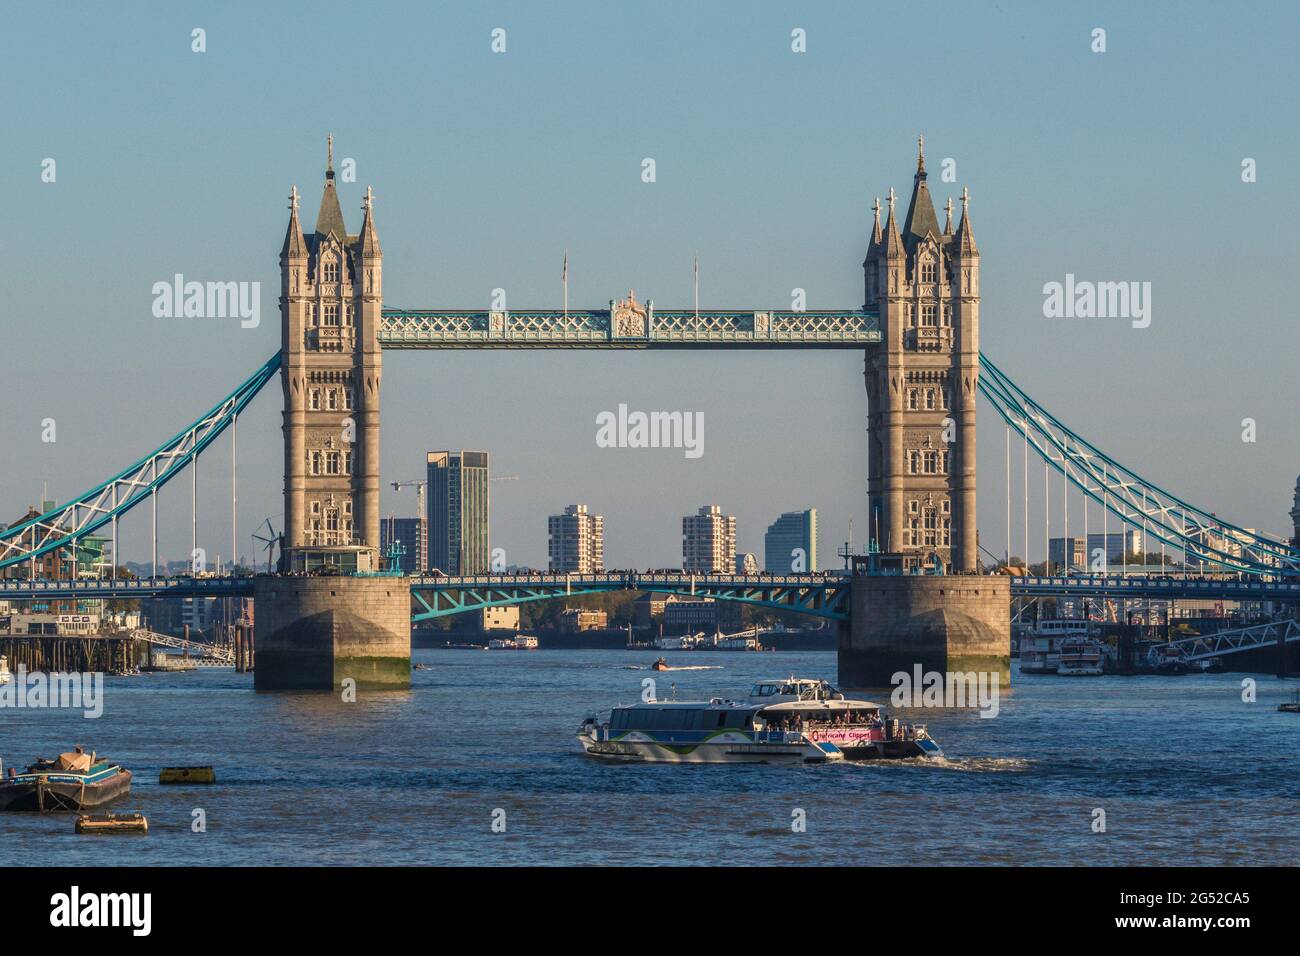 Le Tower Bridge de Londres, un pont suspendu qui traverse la Tamise, a été terminé en 1894. Il est un symbole emblématique de Londres. Banque D'Images